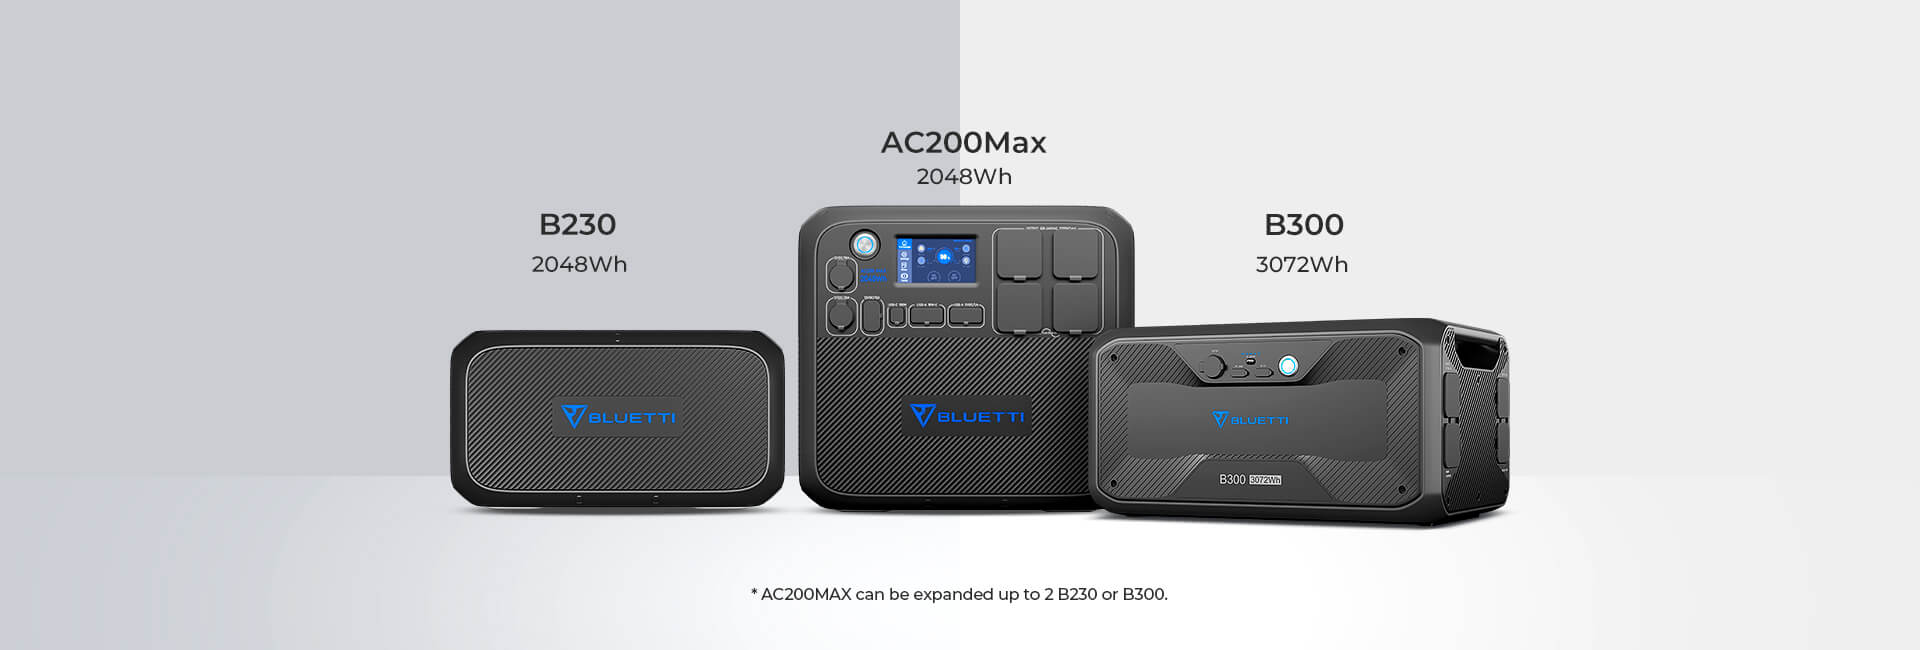 Bluetti AC200 Max 2048 W – Tragbares Netzteil für alle Zwecke